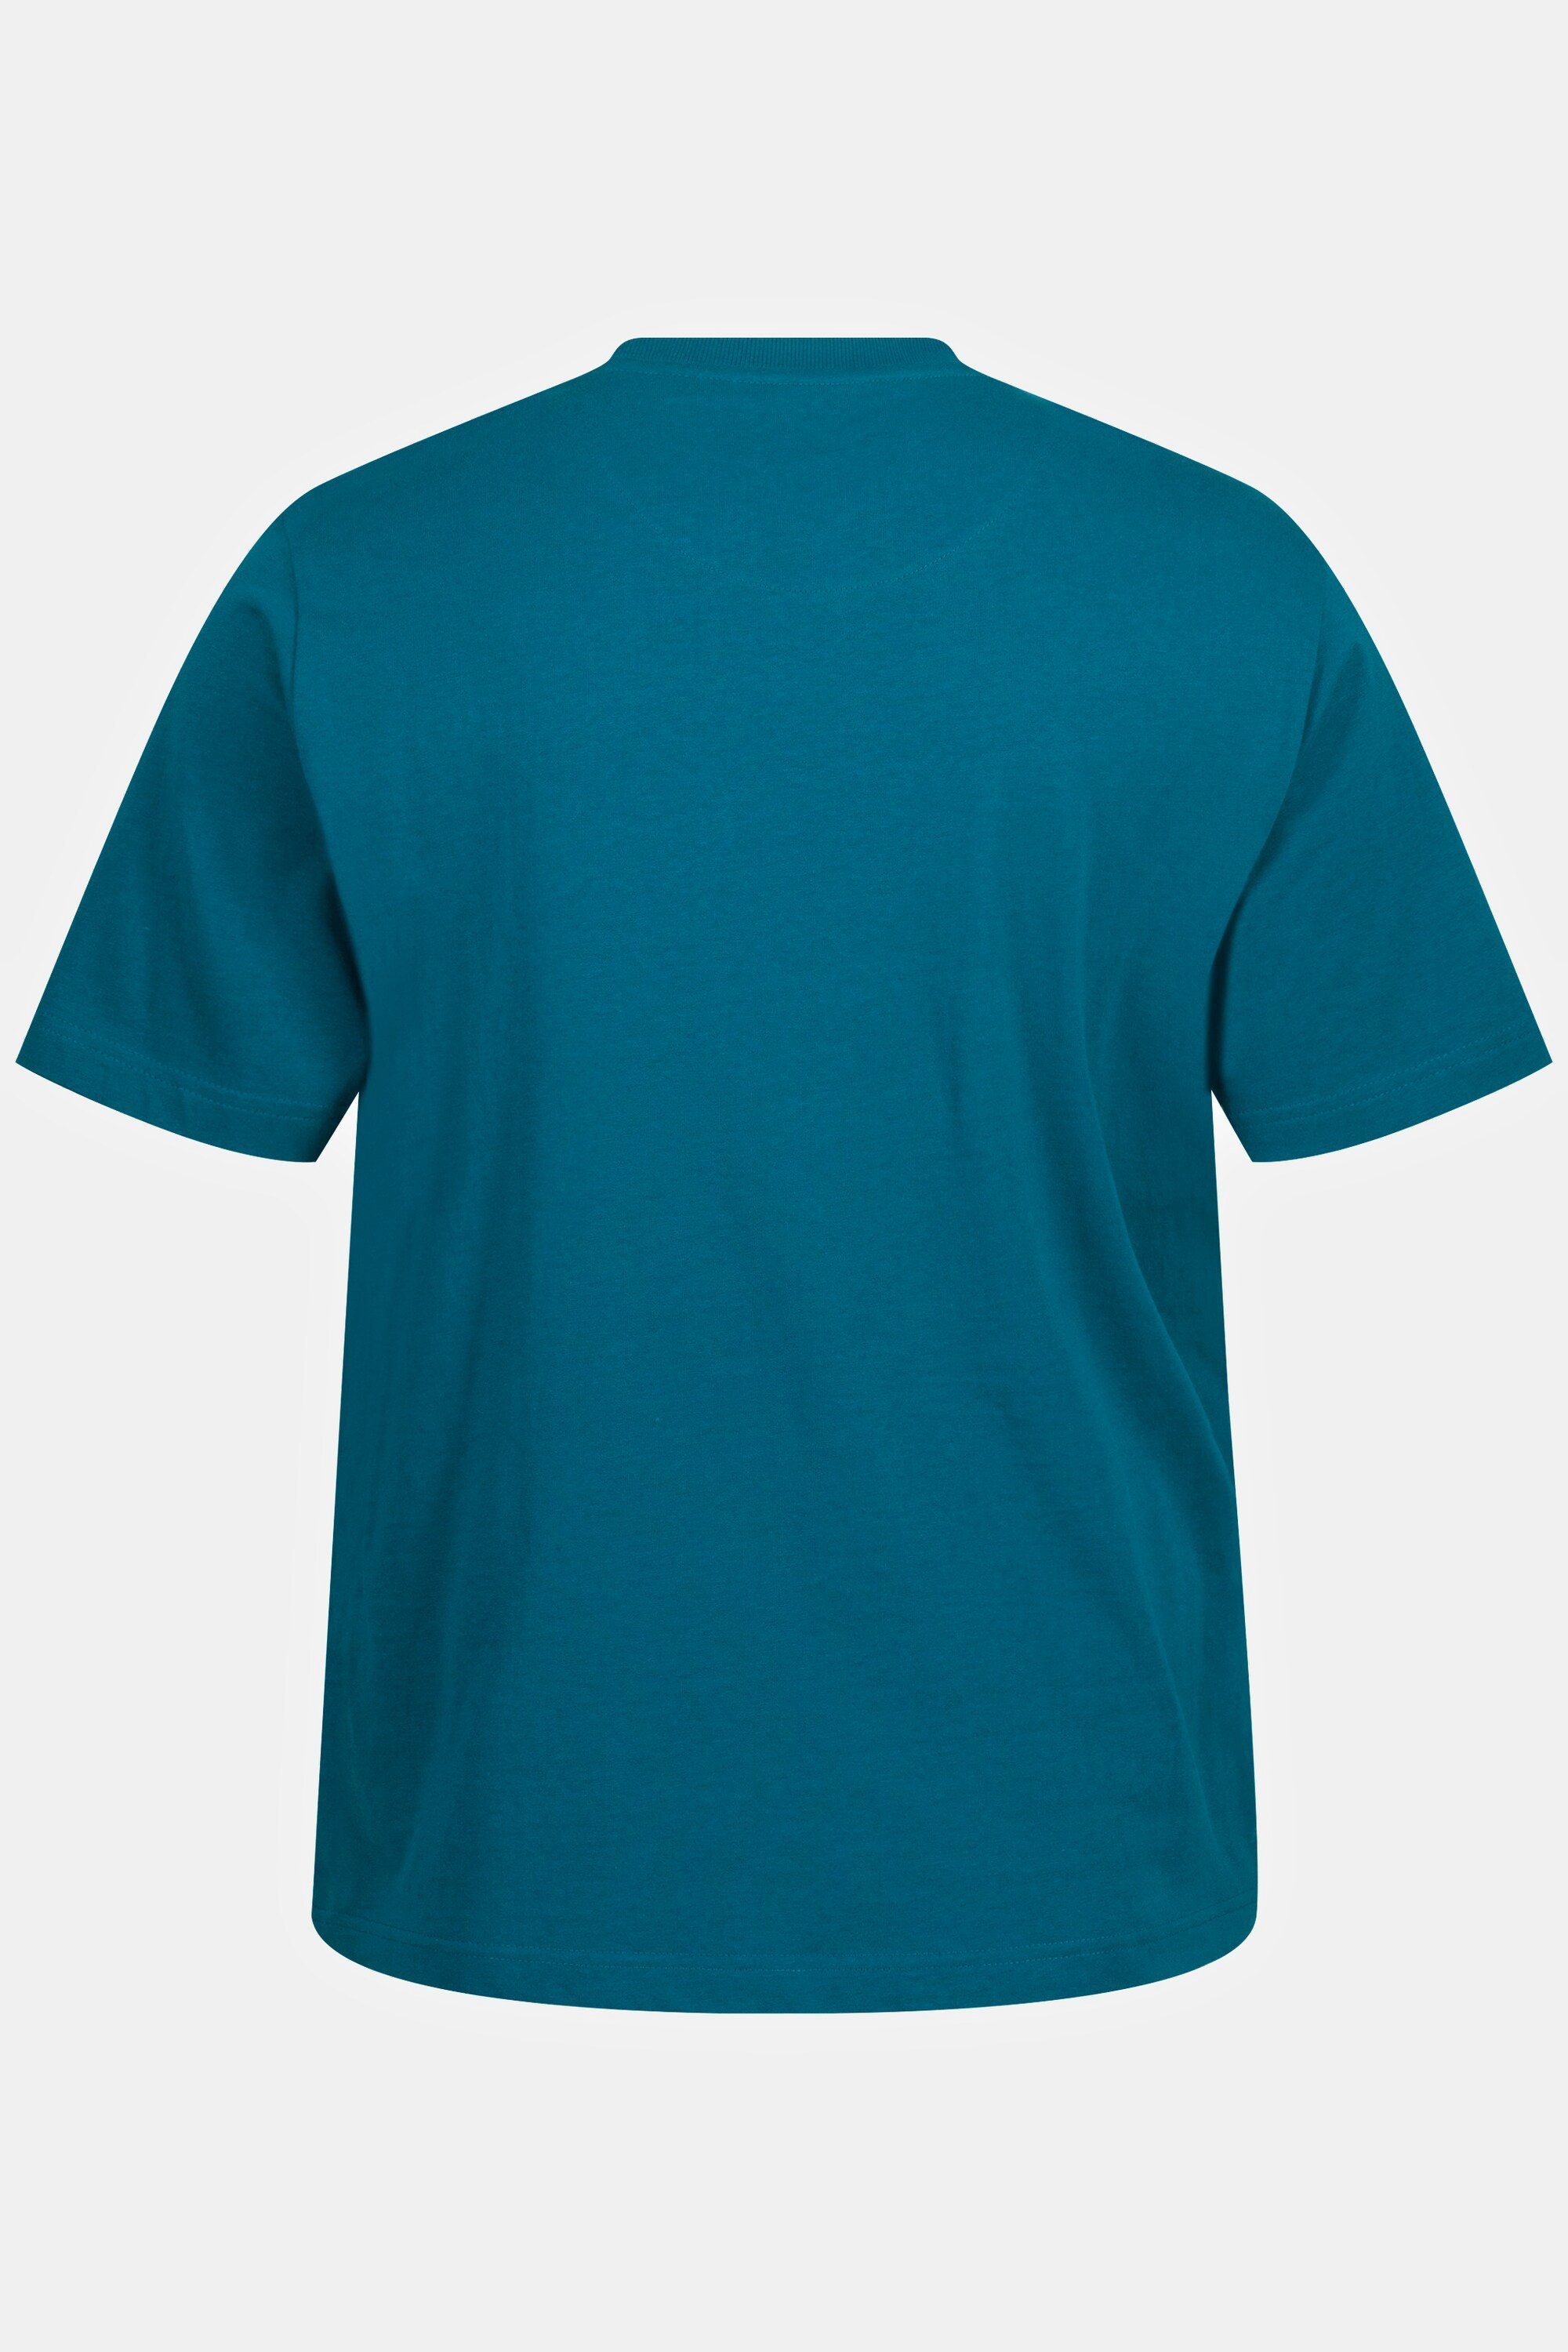 JP1880 T-Shirt T-Shirt Halbarm Stickerei Rundhals